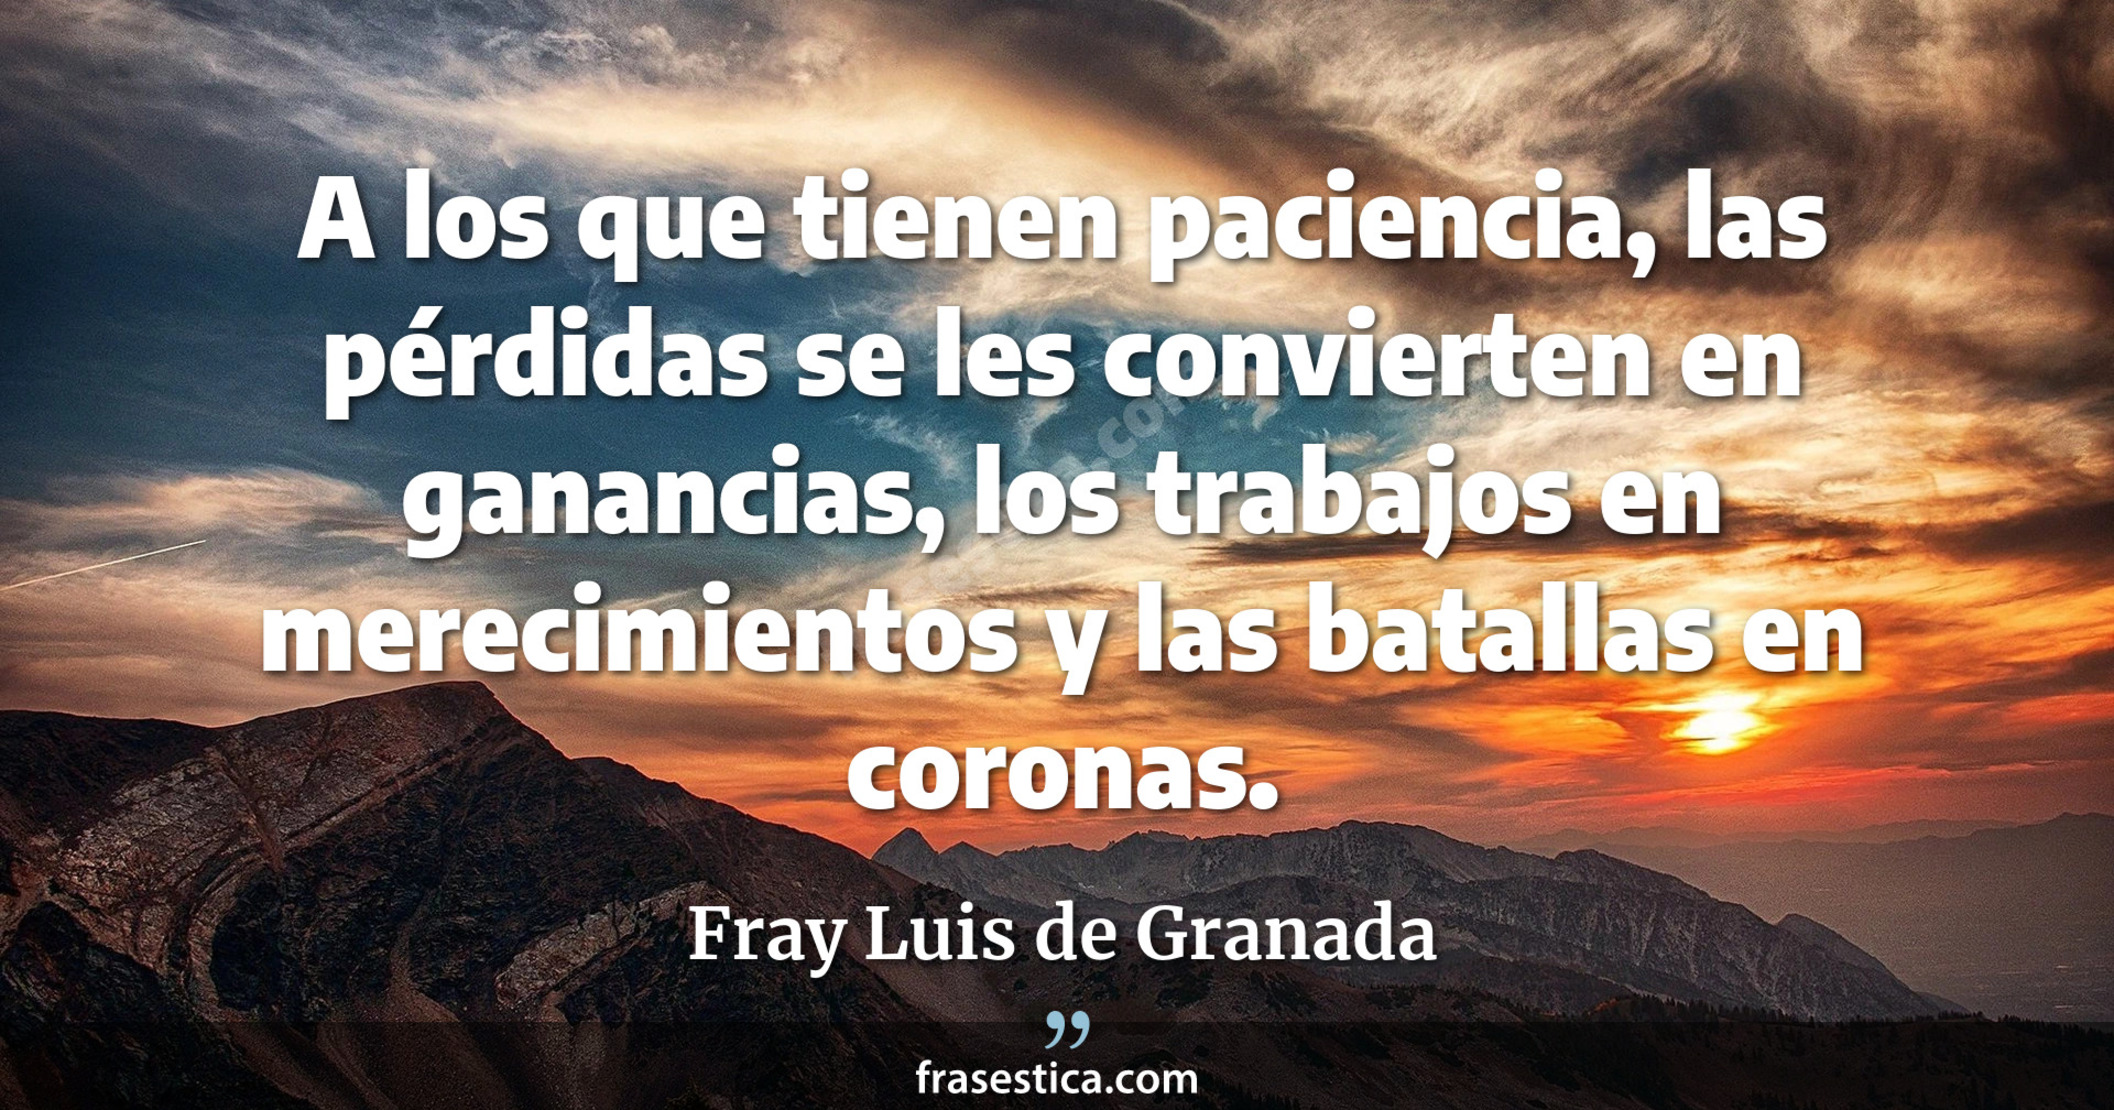 A los que tienen paciencia, las pérdidas se les convierten en ganancias, los trabajos en merecimientos y las batallas en coronas. - Fray Luis de Granada